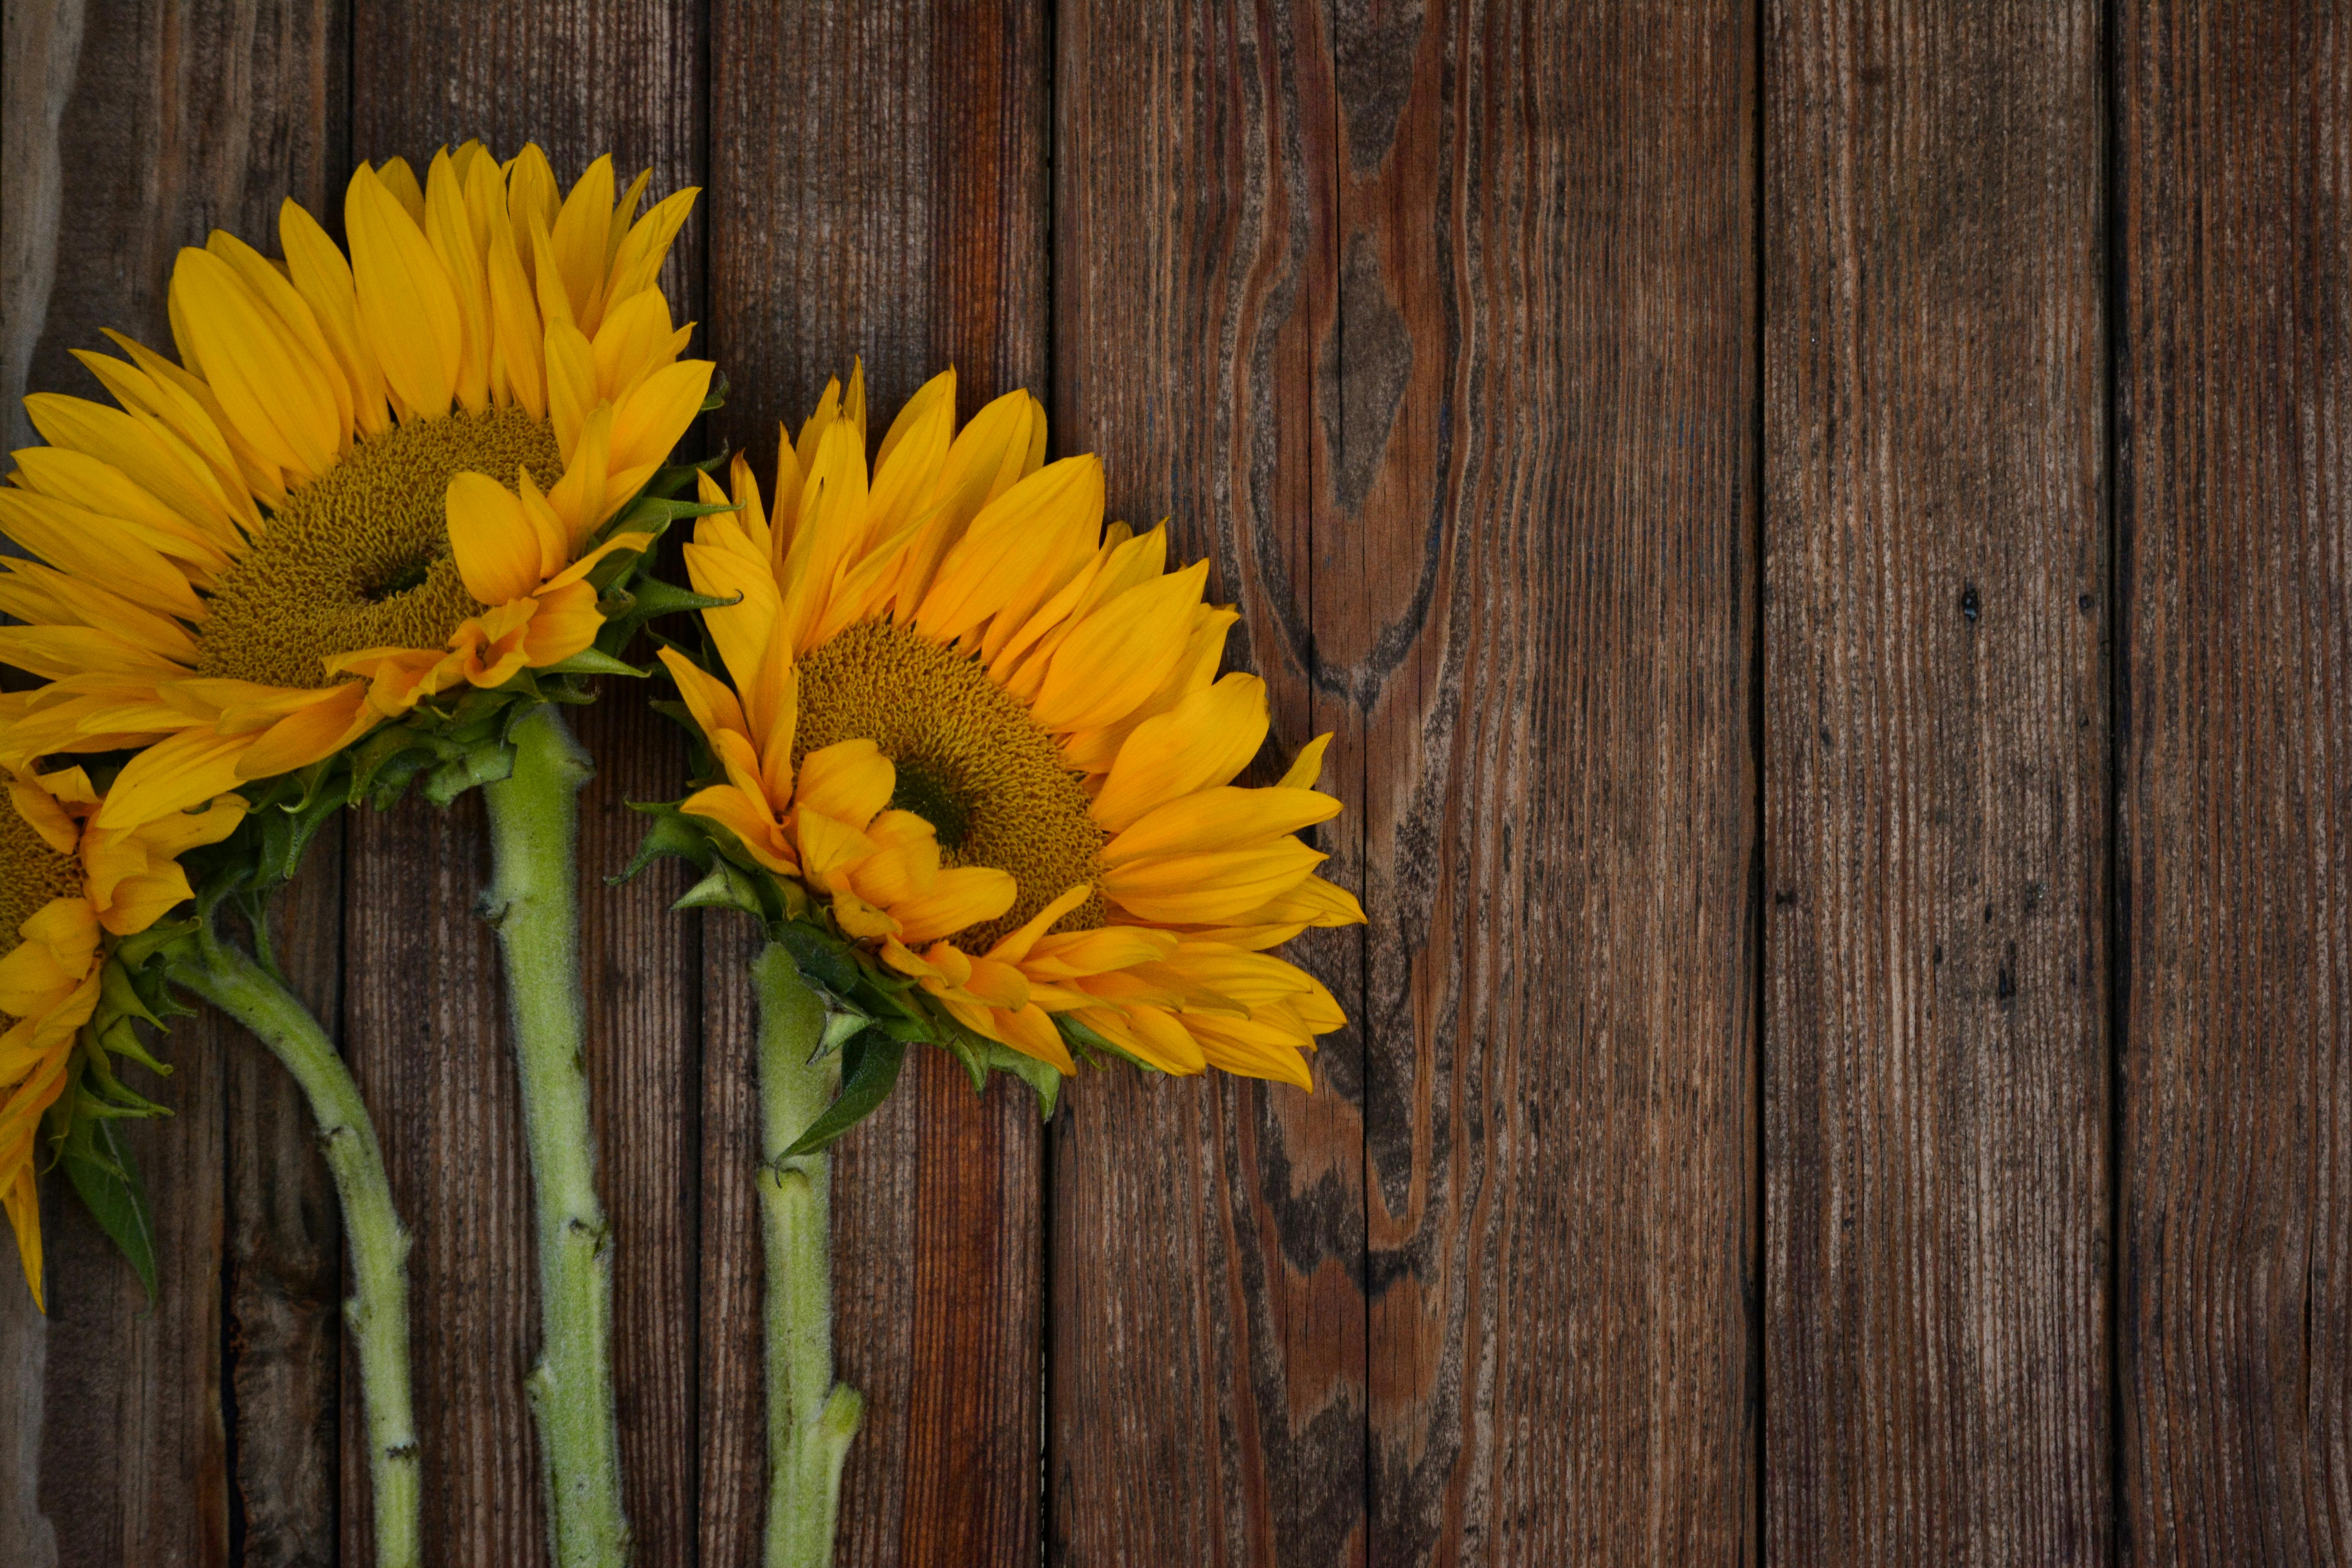 Hoa hướng dương là loài hoa mang đầy sức sống và năng lượng. Để đón một ngày mới tươi sáng, hãy ngắm nhìn những thước phim ảnh đẹp về chúng. Những bức ảnh này sẽ mang tới cho bạn những cảm giác dễ chịu và yên bình, đồng thời khiến cho tâm hồn bạn tràn đầy hy vọng và nghị lực.